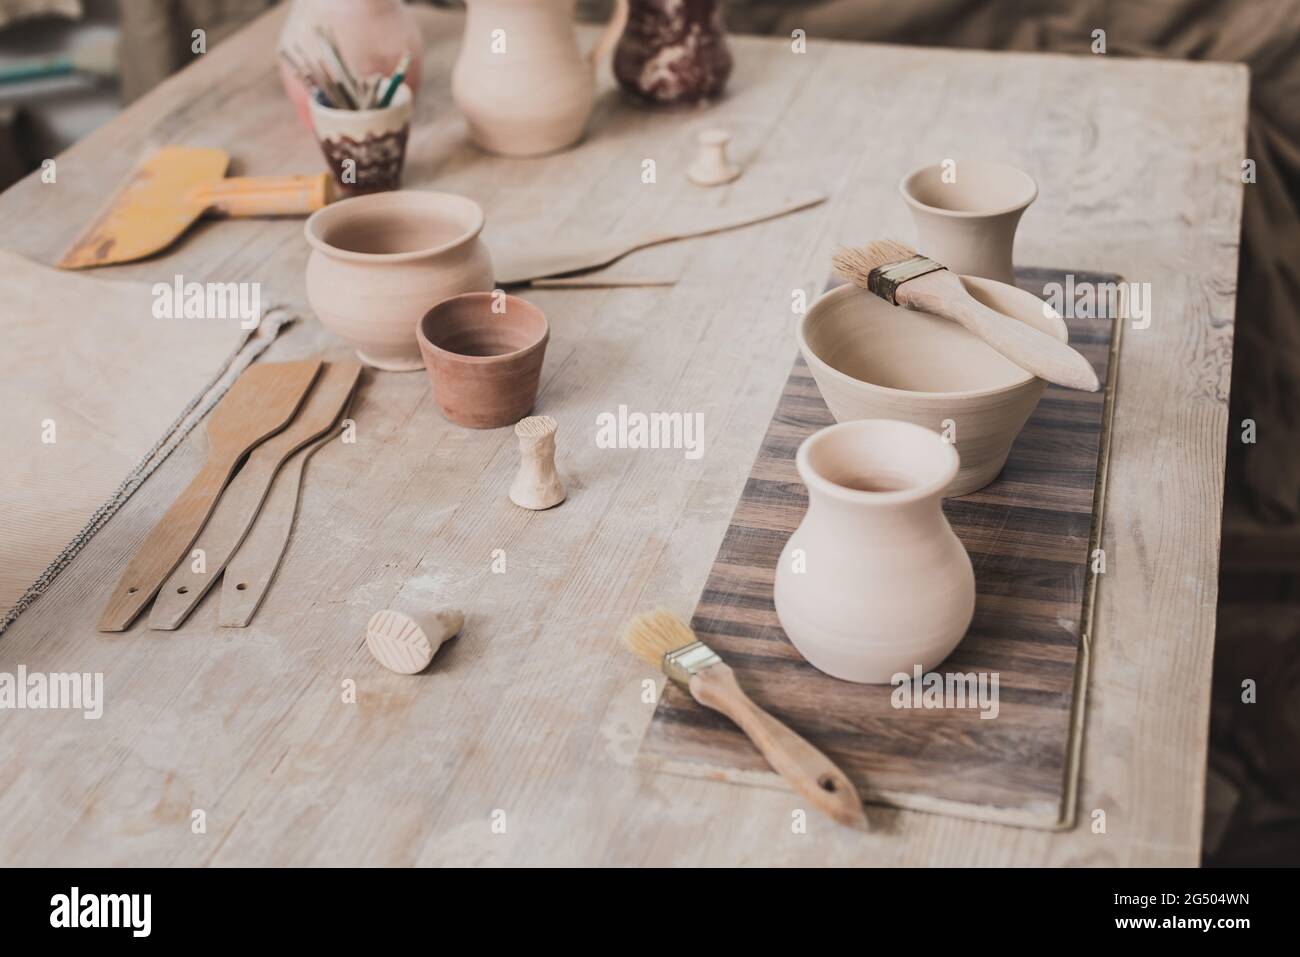 vue en grand angle des pots en argile faits à la main sur une table en bois près de l'équipement en poterie Banque D'Images